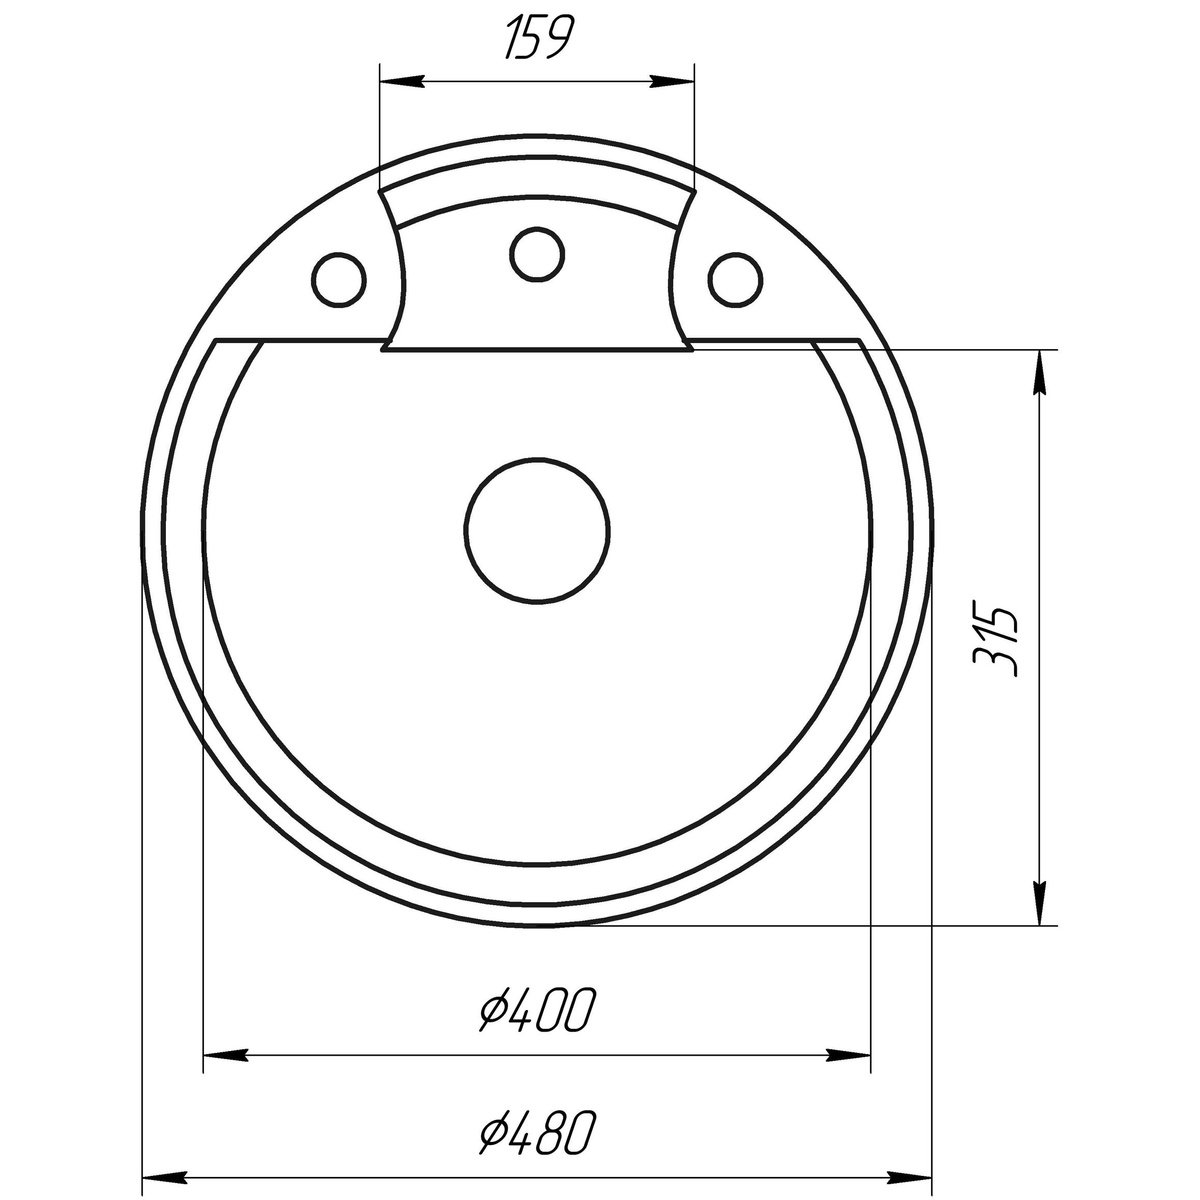 Мойка для кухни гранитная круглая GLOBUS LUX GURON 480x480x190мм без сифона черная 000001562